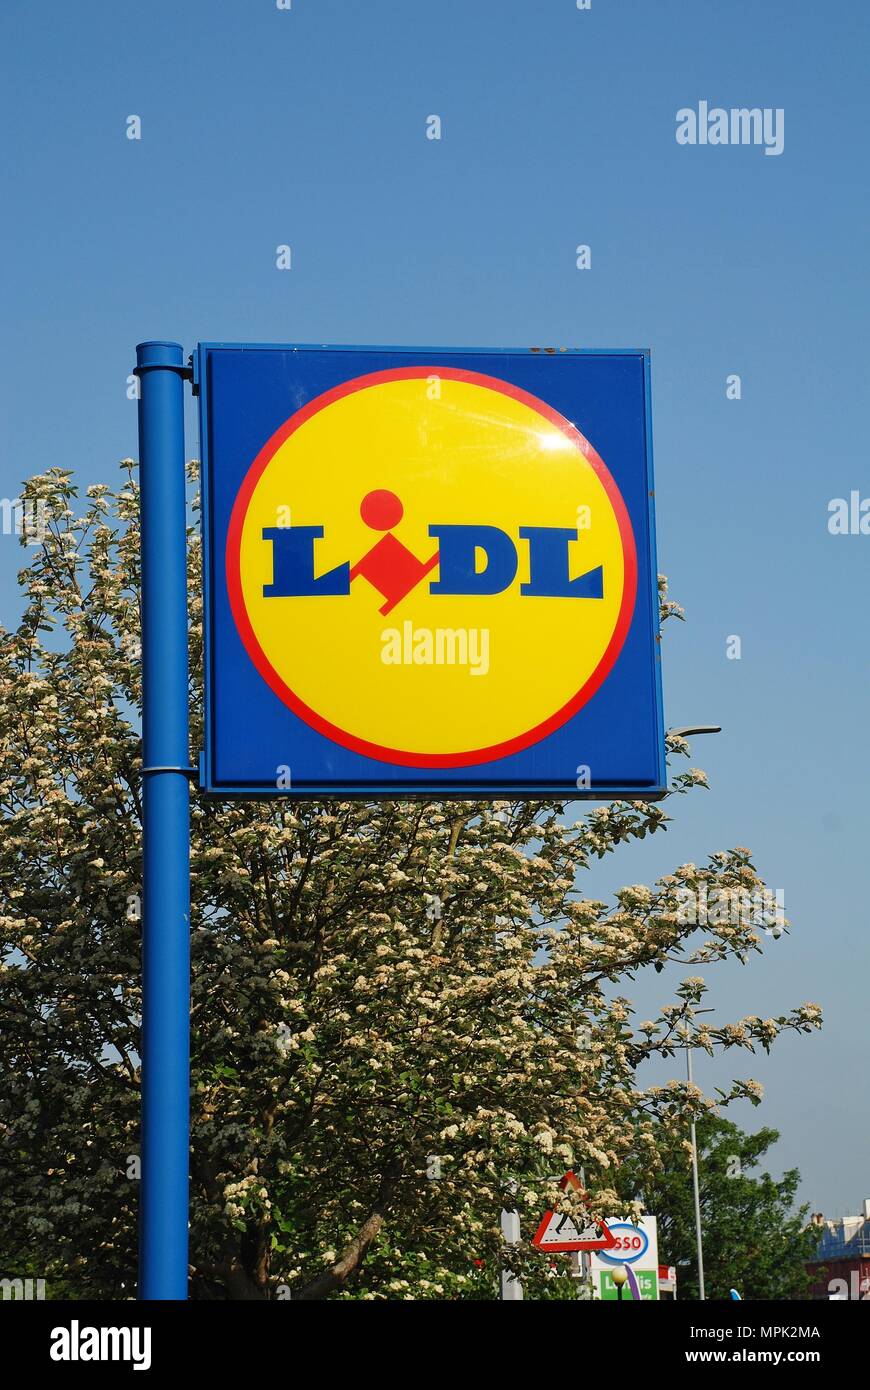 Signage außerhalb einer Niederlassung der deutschen Supermarkt Lidl in St. Leonards-on-Sea, East Sussex, England am 23. Mai 2018. Lidl haben über 670 Geschäfte in Großbritannien. Stockfoto